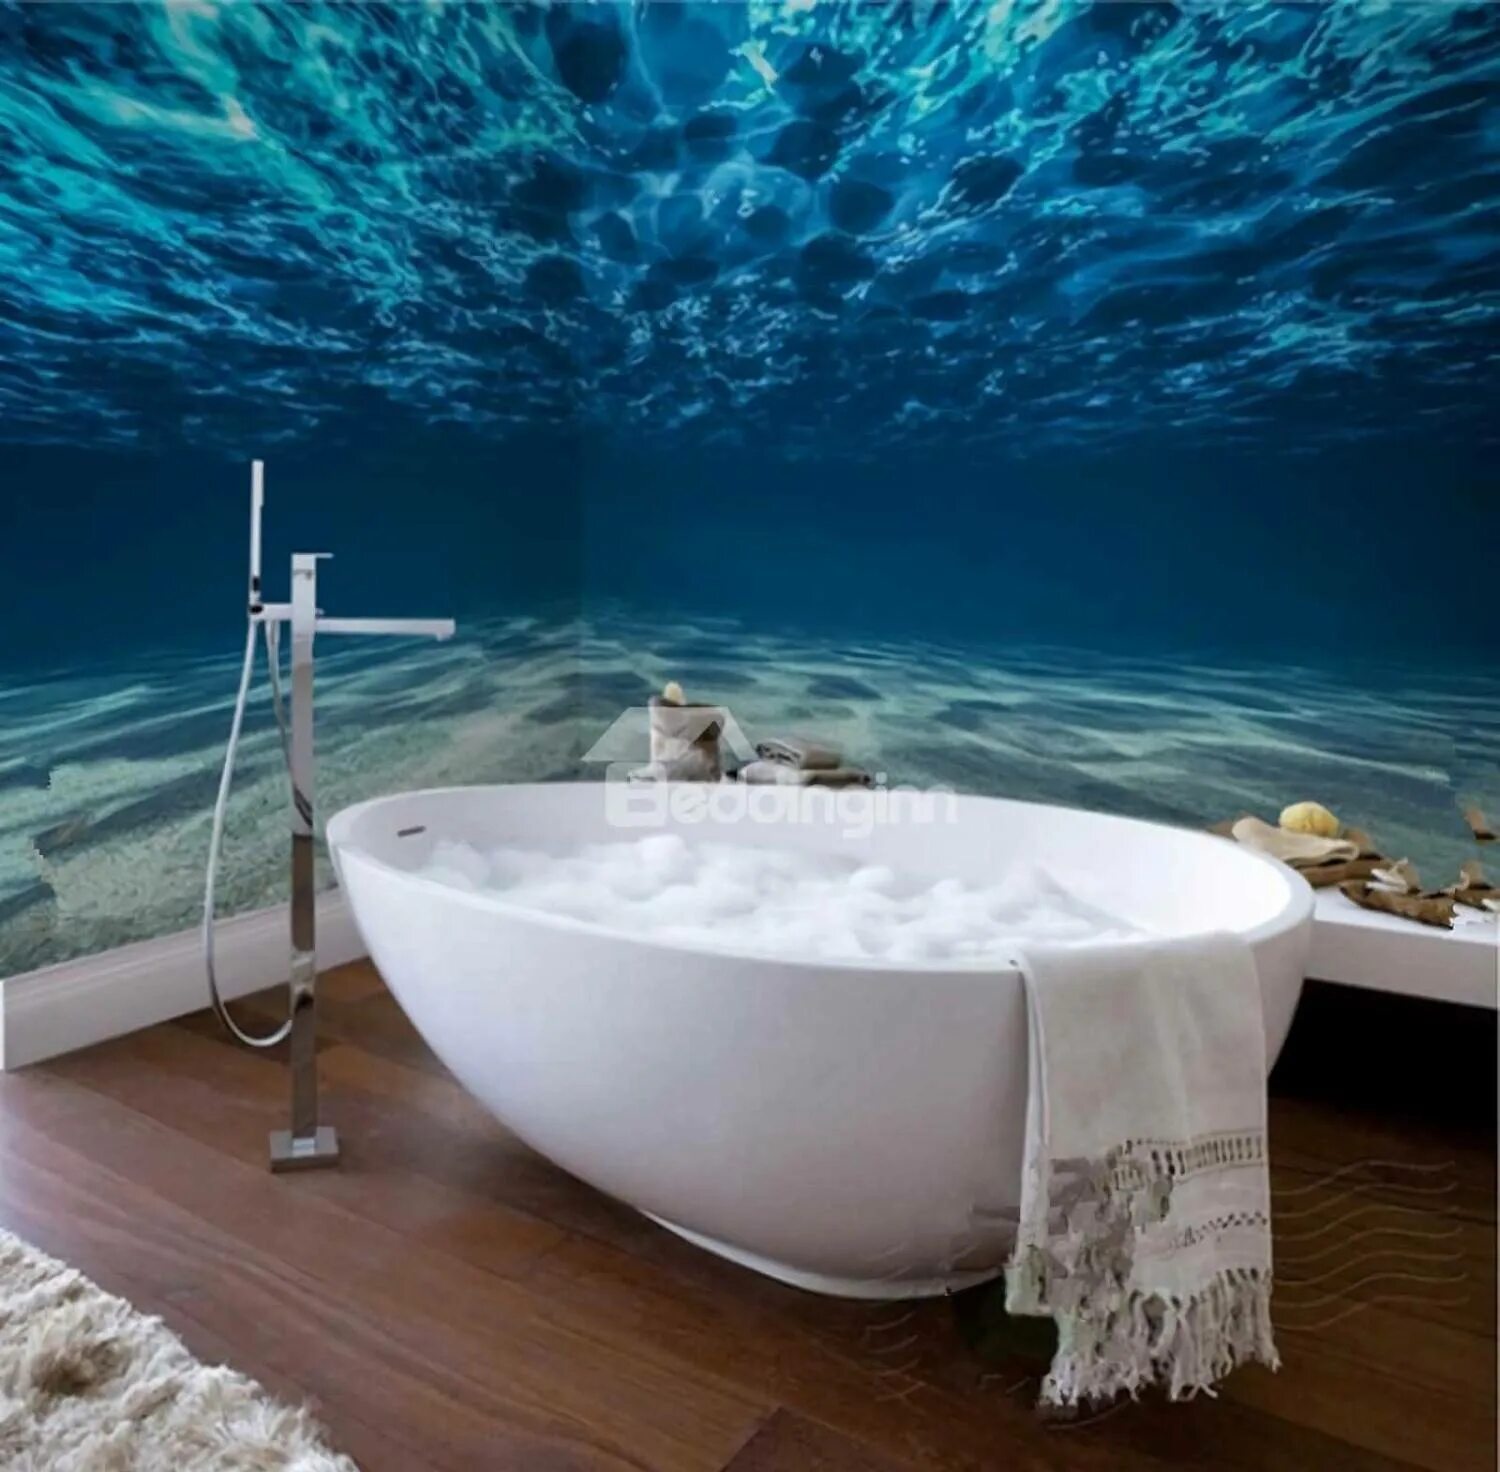 Ванная комната море. Фотообои в ванной. Ванная в стиле океан. Ванная в морской тематике.